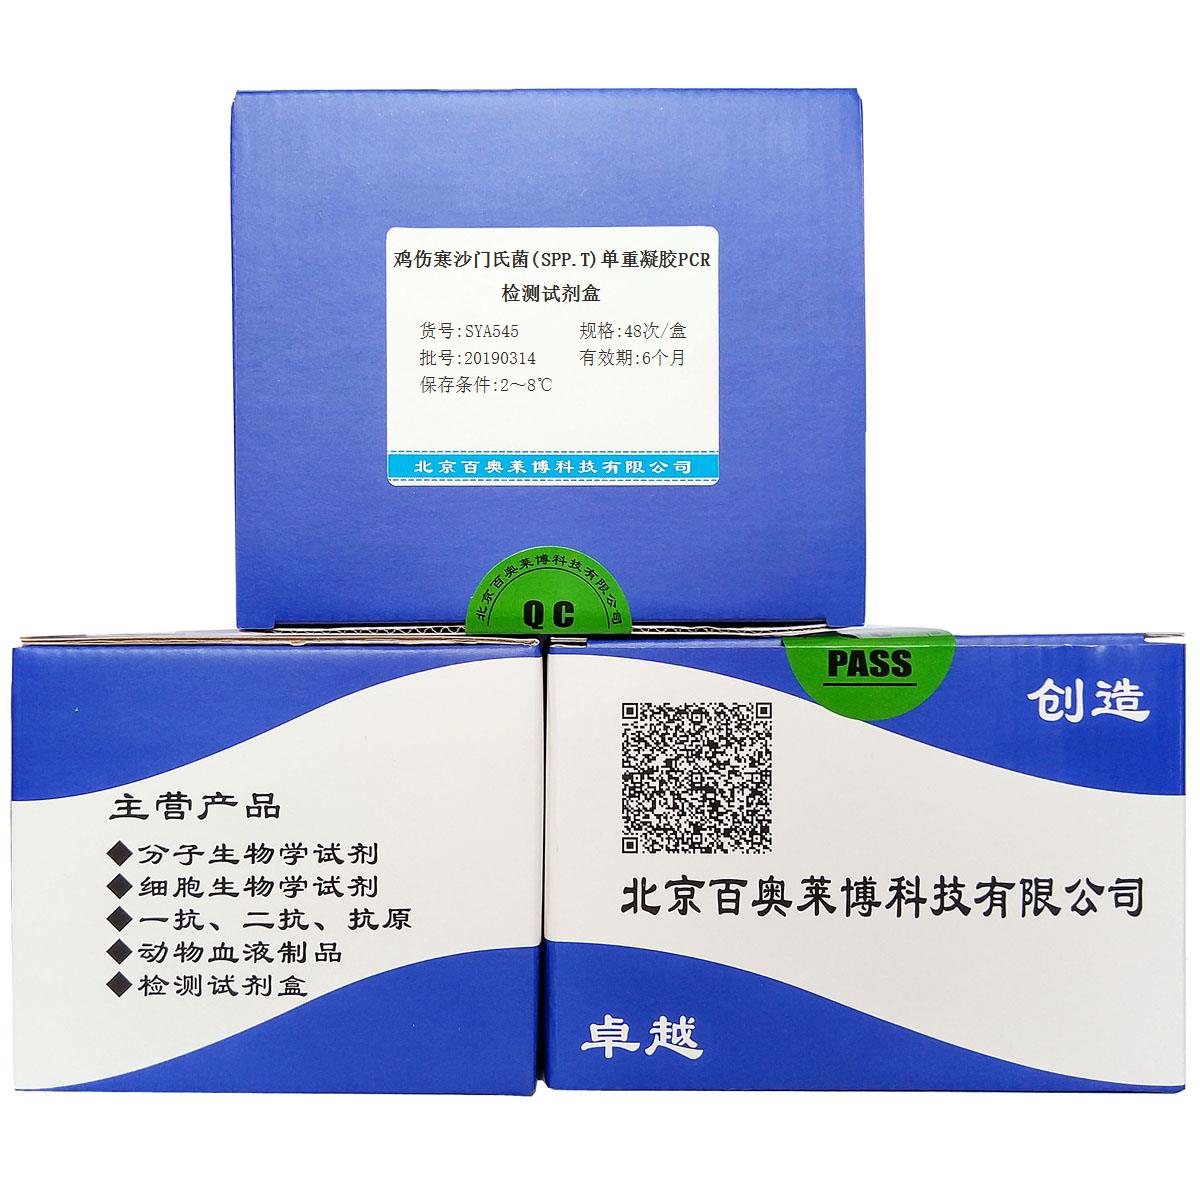 鸡伤寒沙门氏菌(SPP.T)单重凝胶PCR检测试剂盒